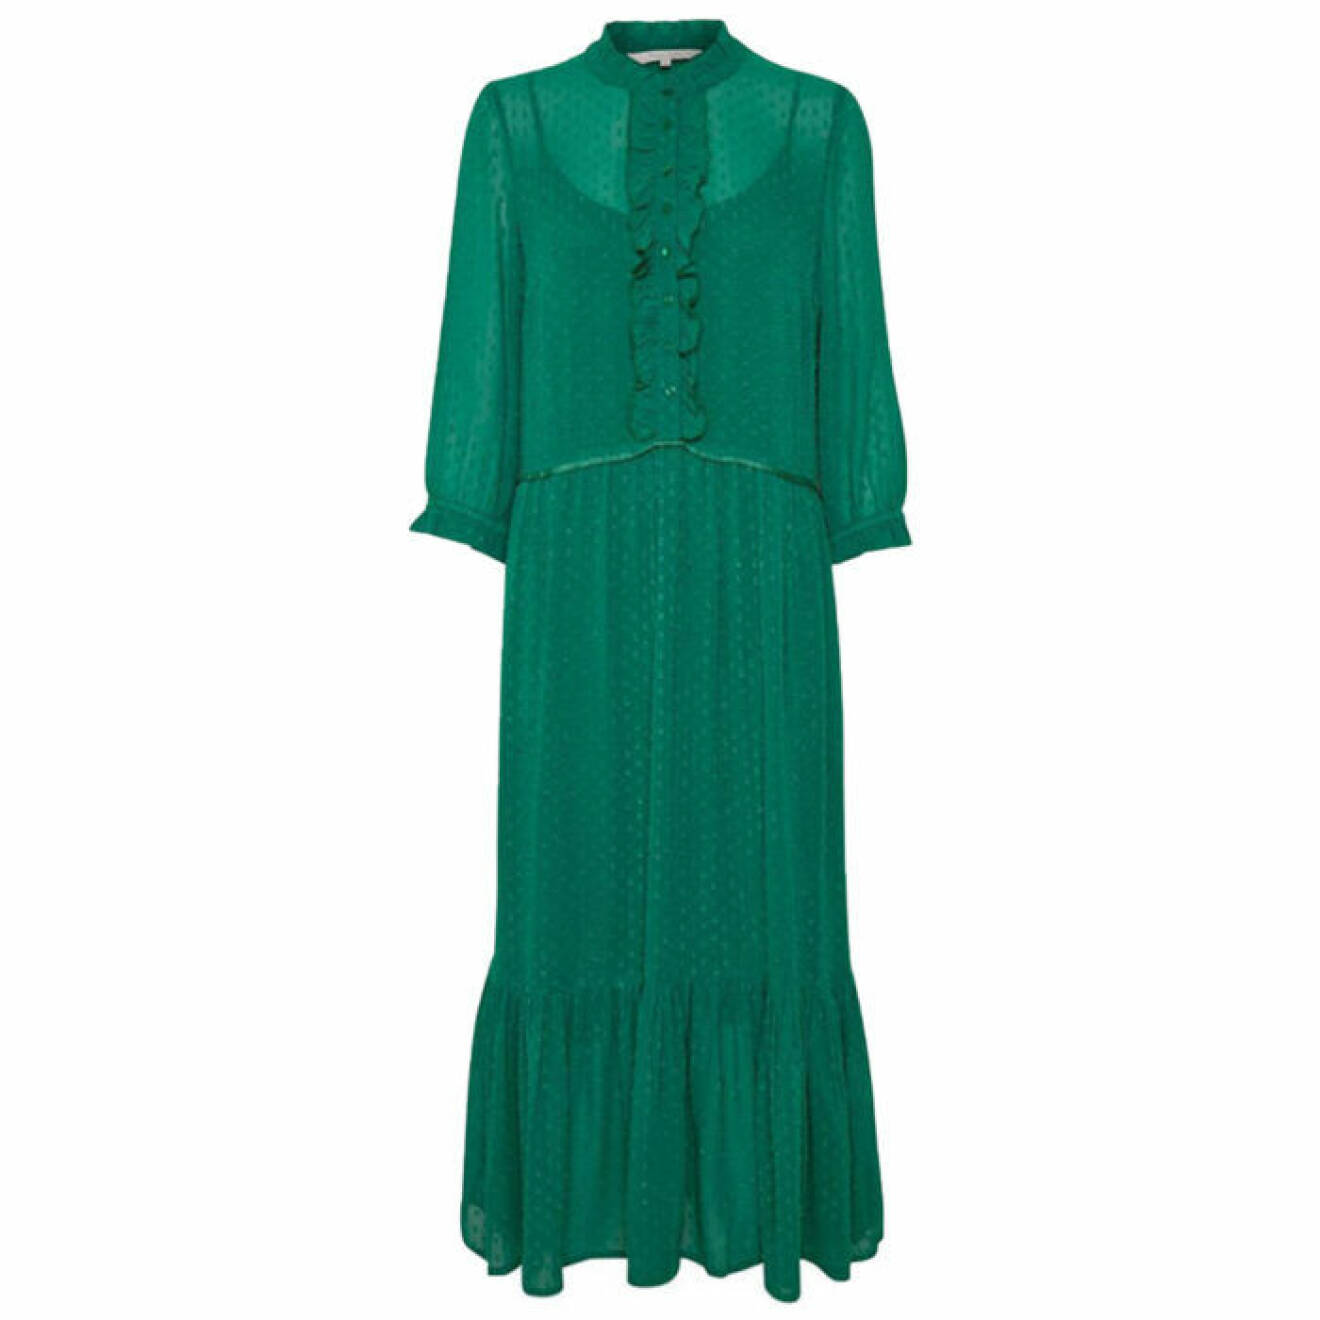 Grön klänning med krage och volanger